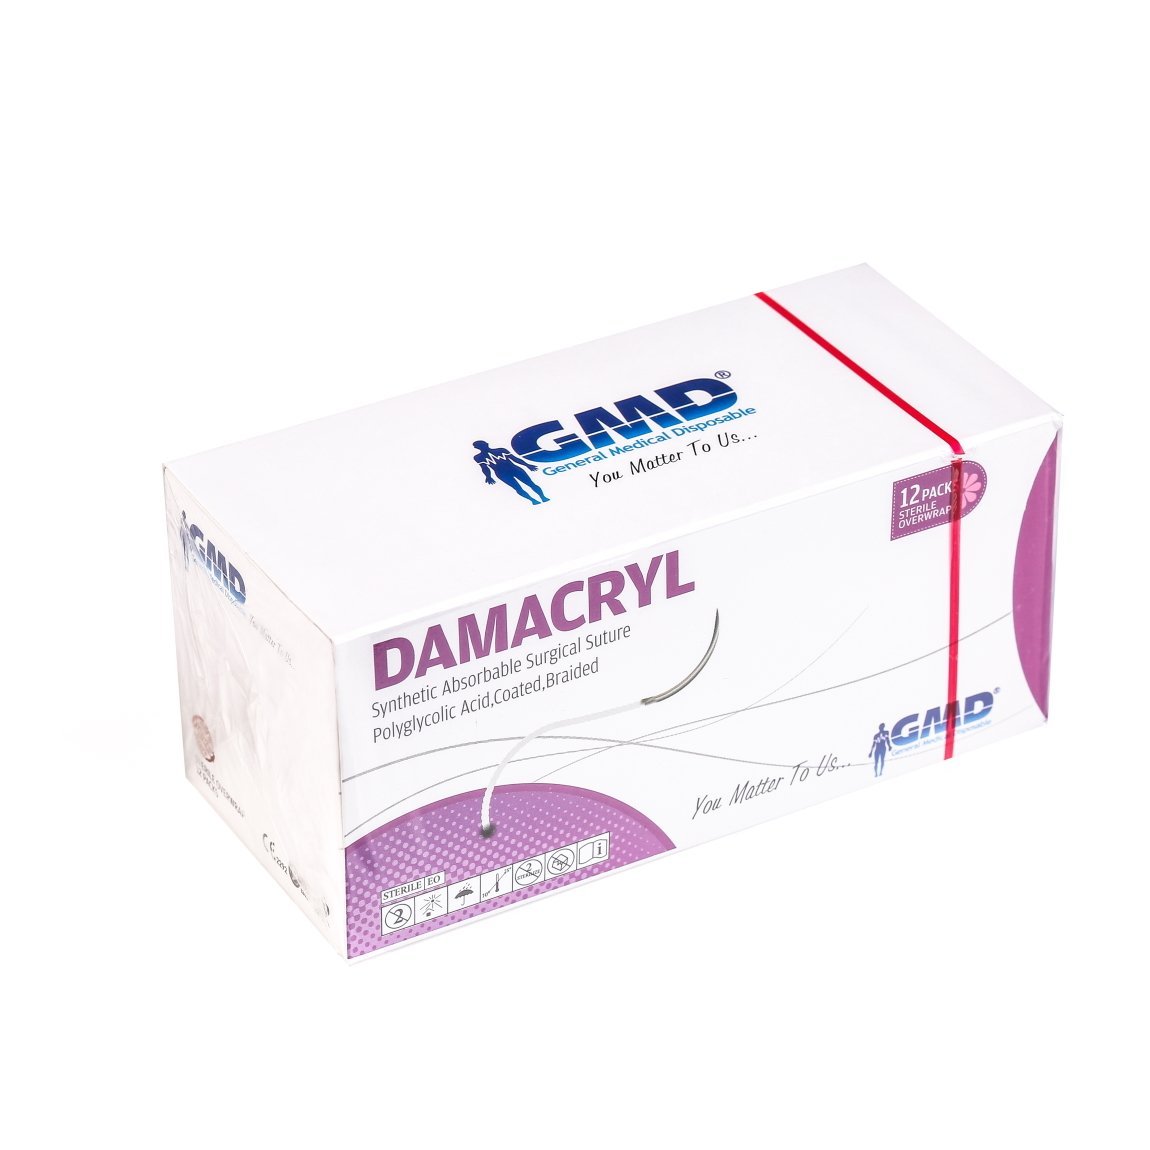 Damacryl Emilebilir Cerrahi Sütür - PGA İplik - USP:3-0-75cm - 3/8 Daire 26 mm - Ters Keskin İğne